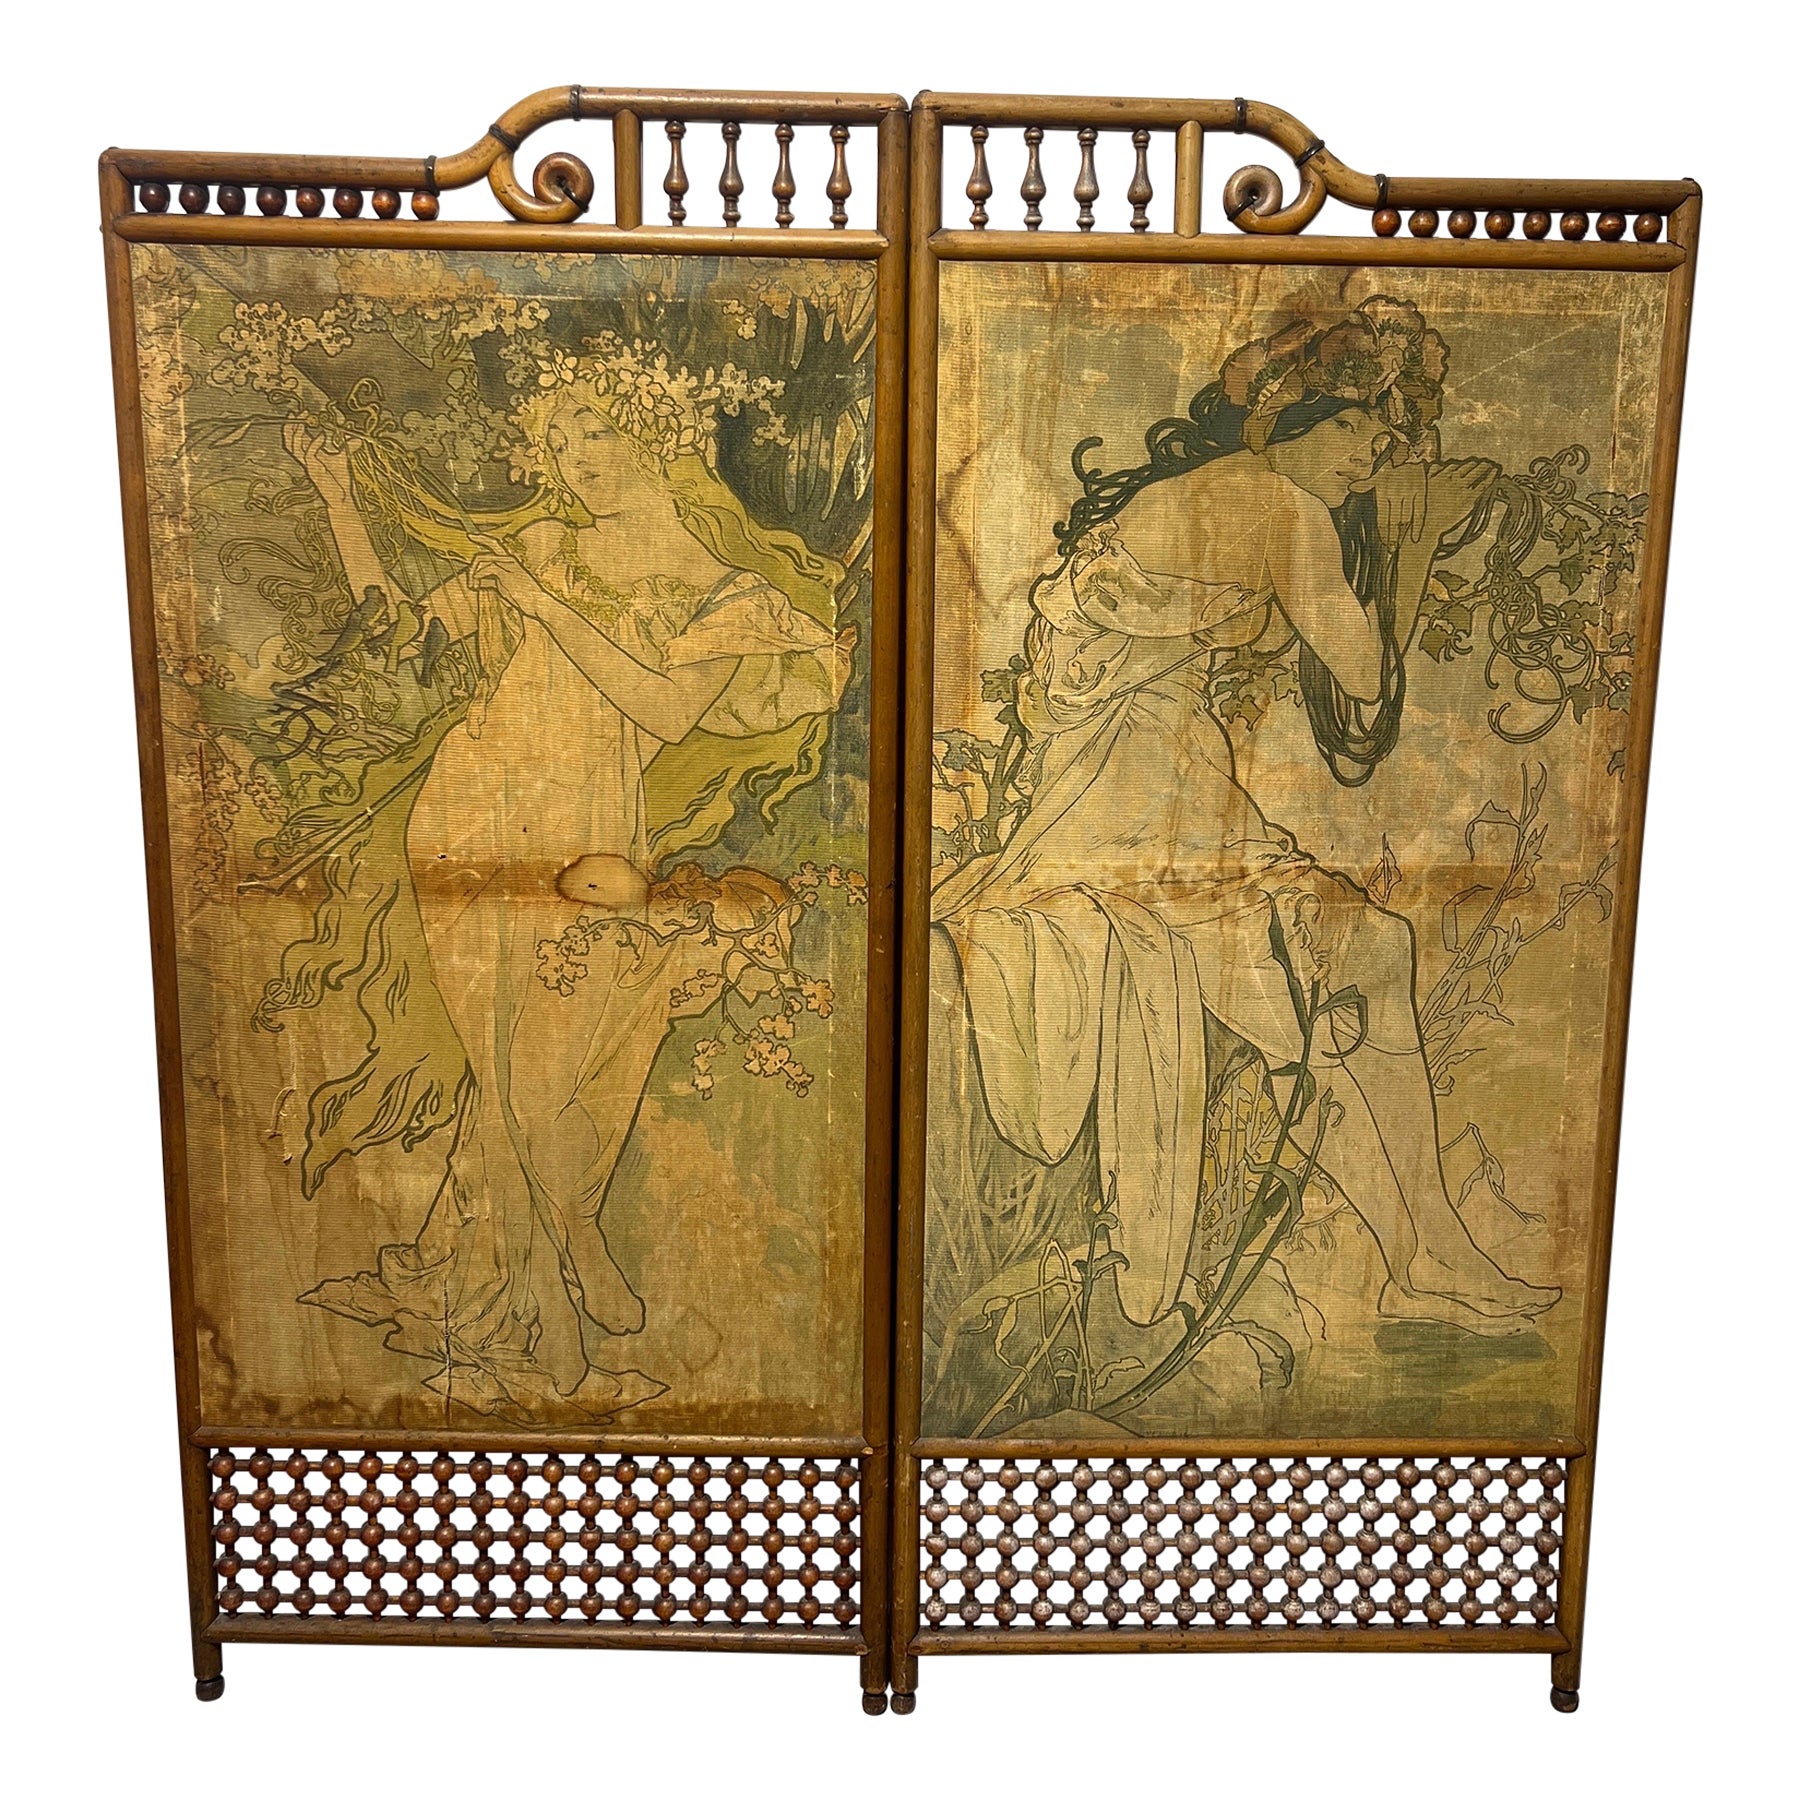 Attr Alphonse Mucha (Czech, 1860-1939), Art Nouveau “Four Seasons” Floor Screen For Sale